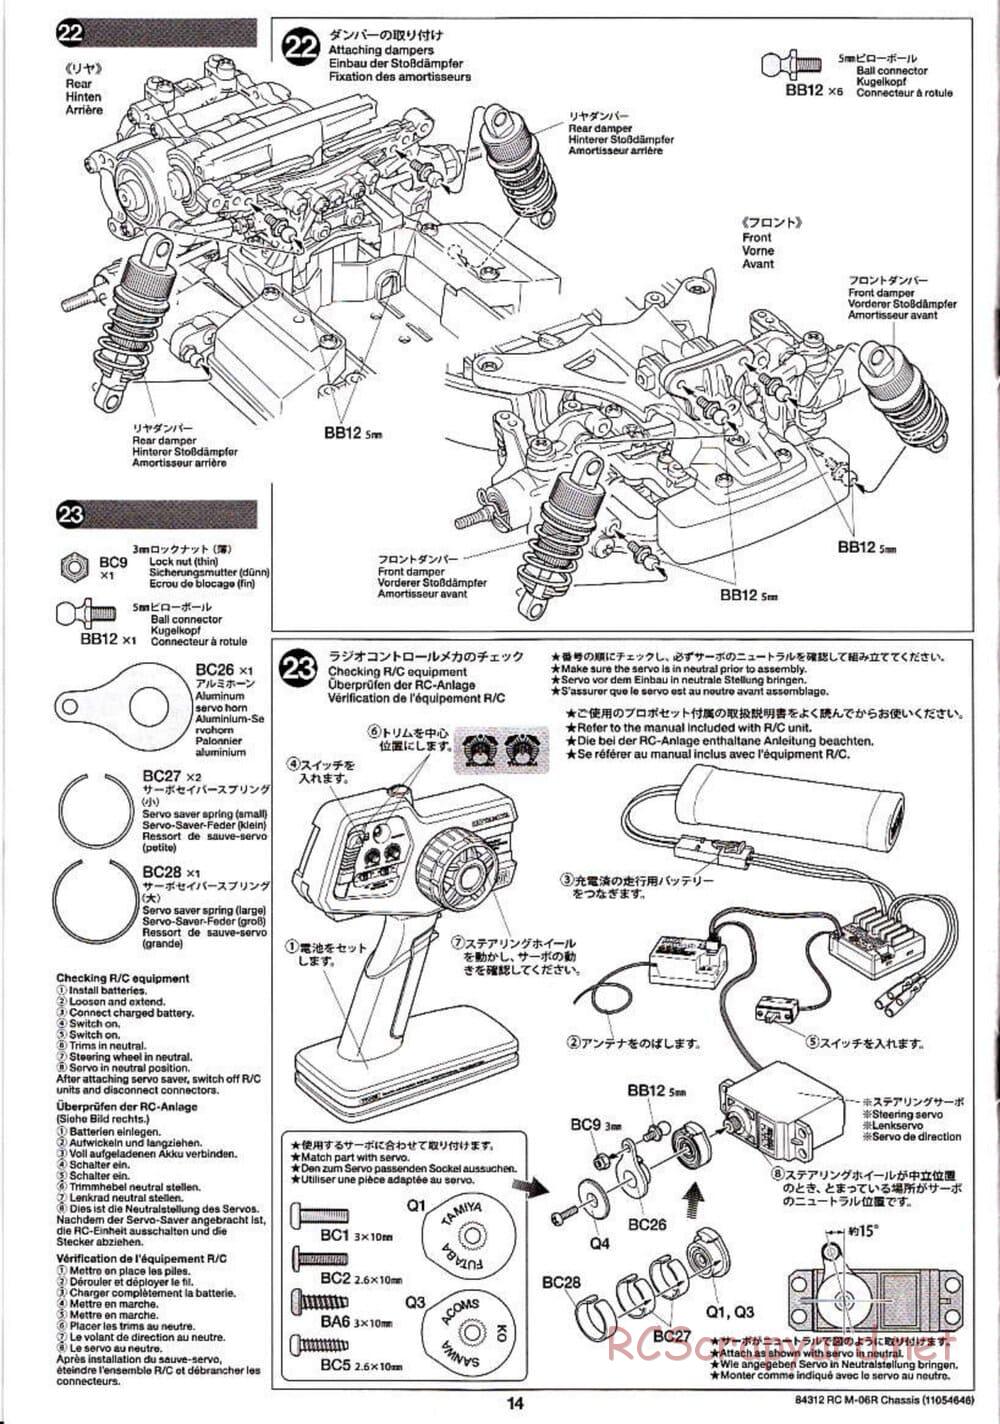 Tamiya - M-06R Chassis - Manual - Page 14